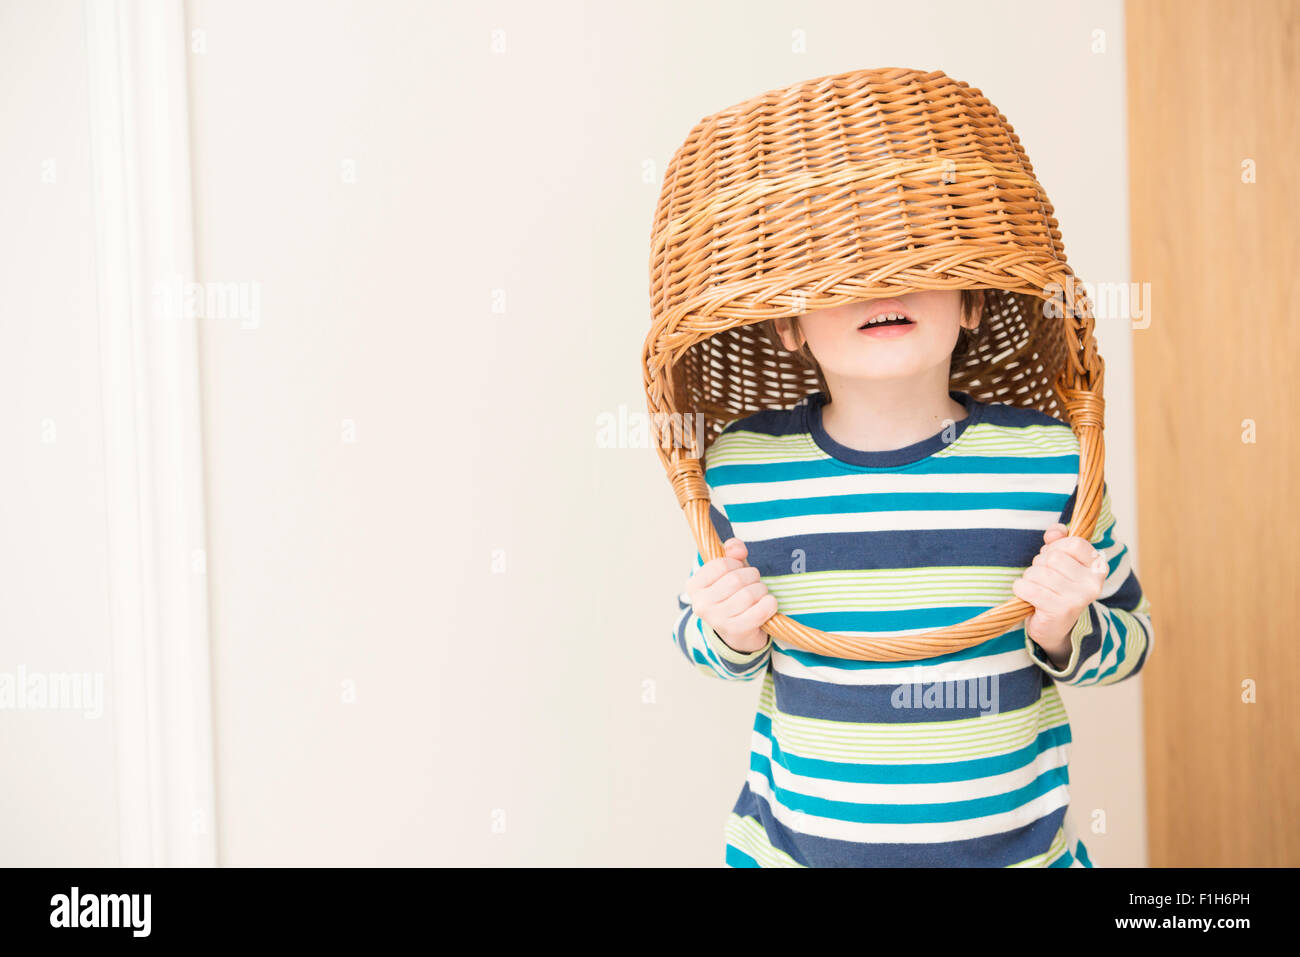 Kleine Mädchen spielen und Weidenkorb über ihren Kopf halten. Konzeptbild von Kindheit Spaß, Fantasie und Vorstellungskraft. Stockfoto